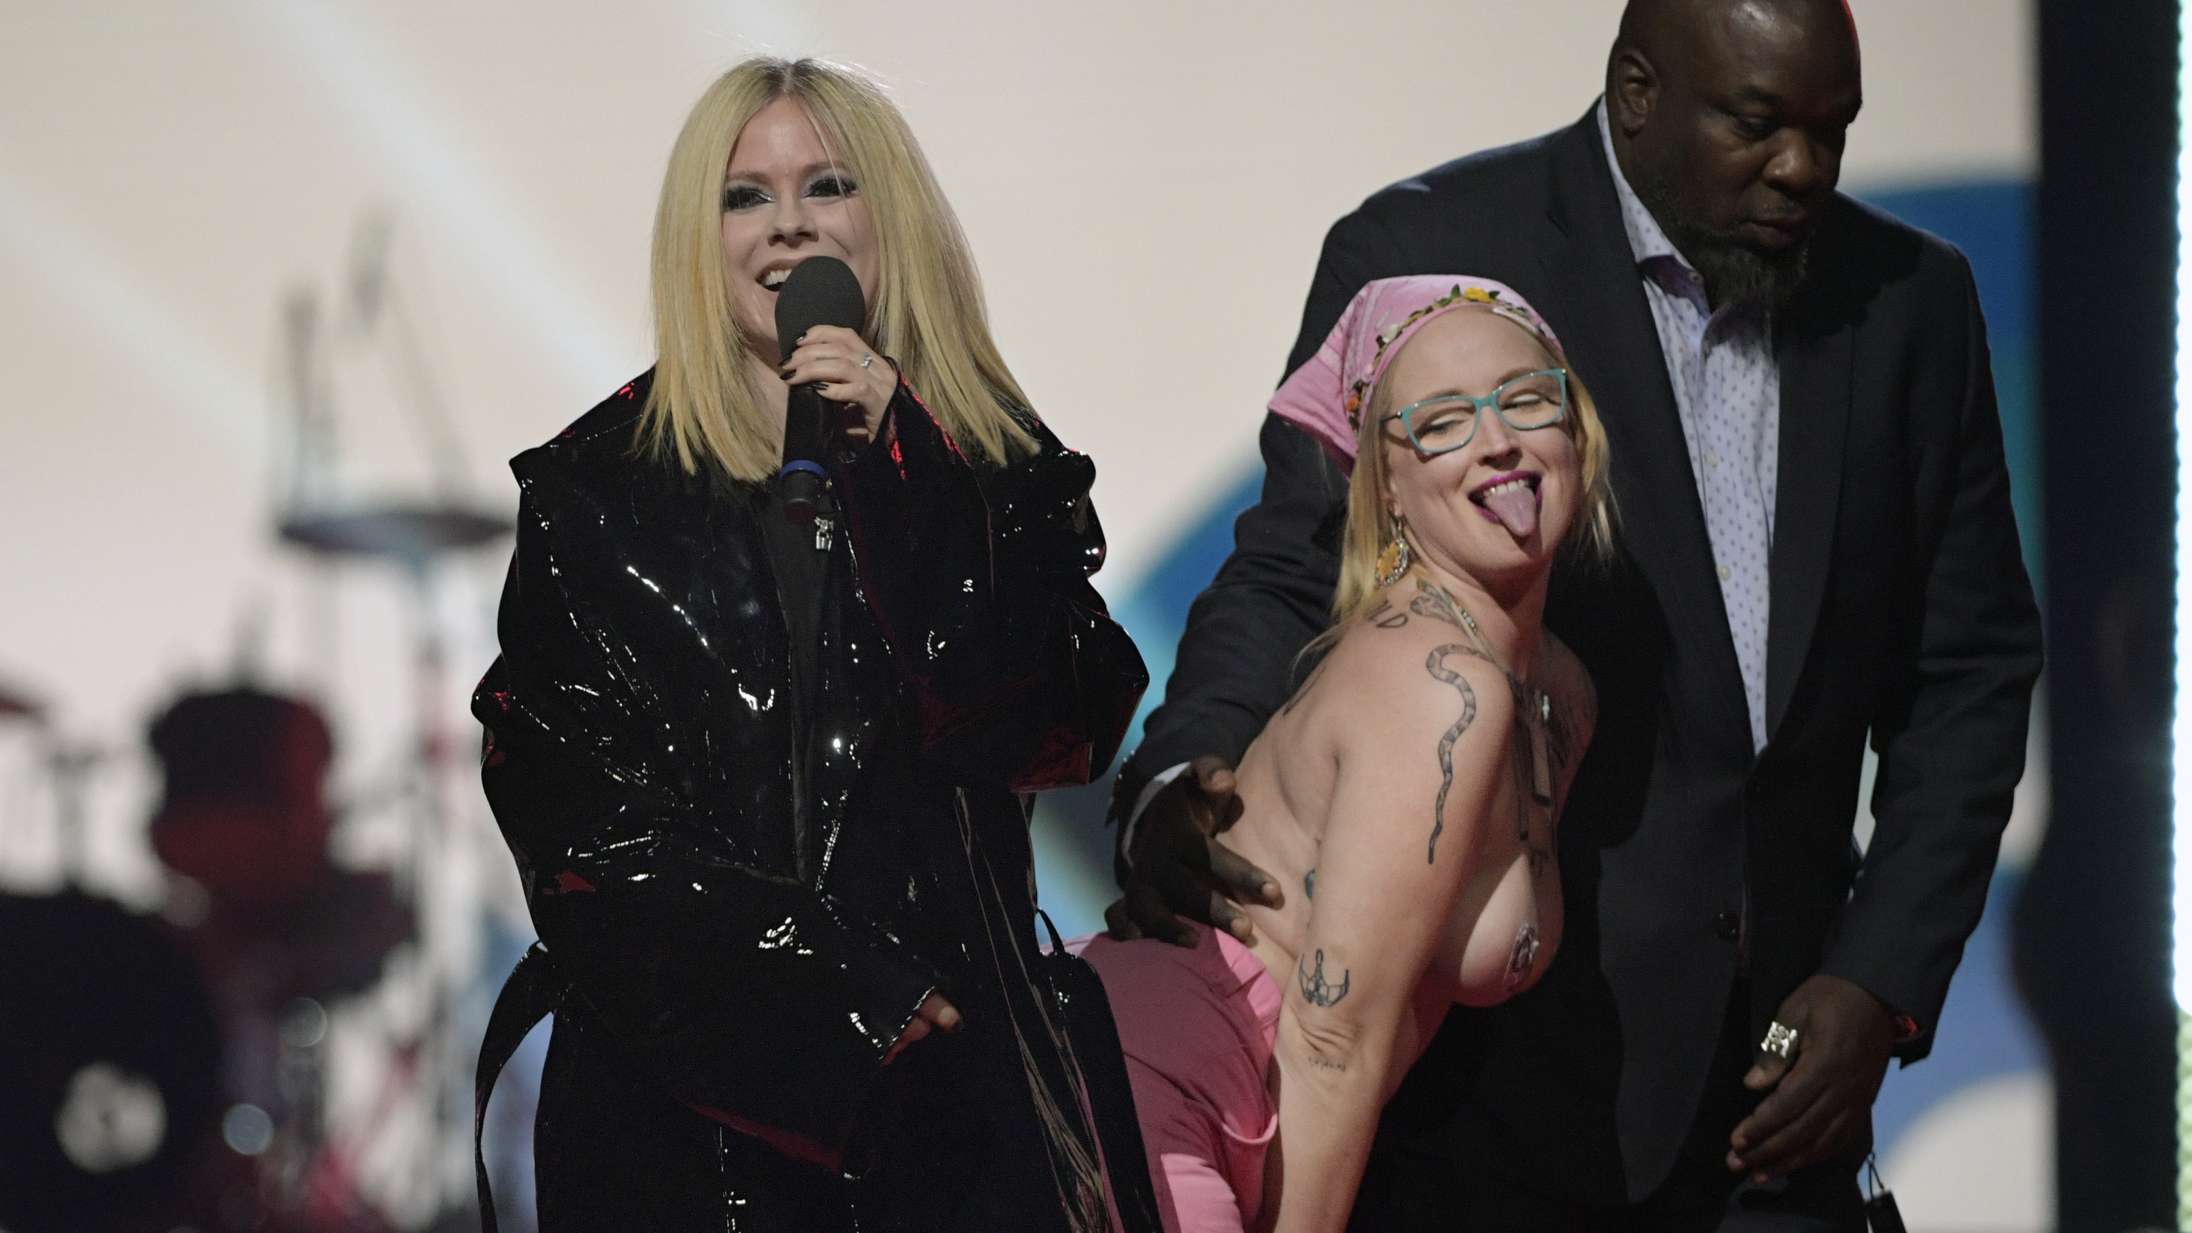 Avril Lavigne konfronterer topløs demonstrant på scenen: »Jeg fucker en bitch op«